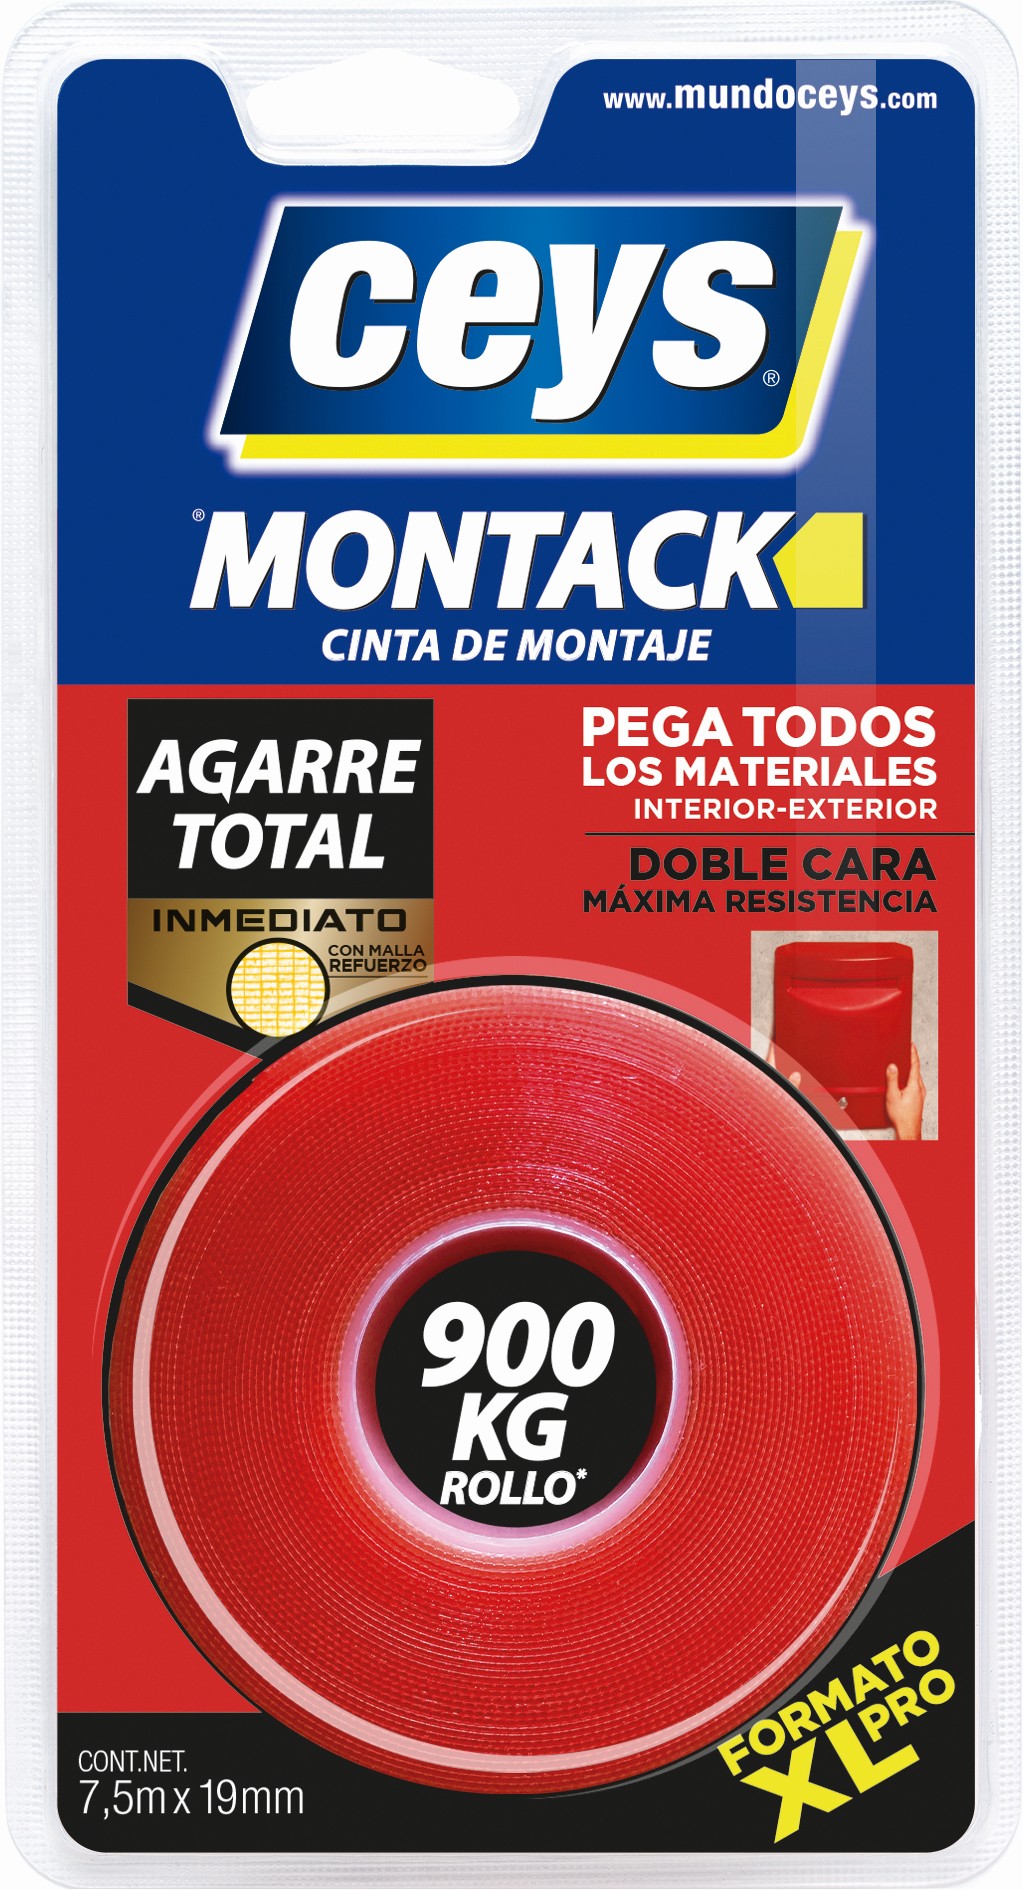 ceys - Montack a.t - Rojo Transaparente - Cinta blister 2,5 M x 19